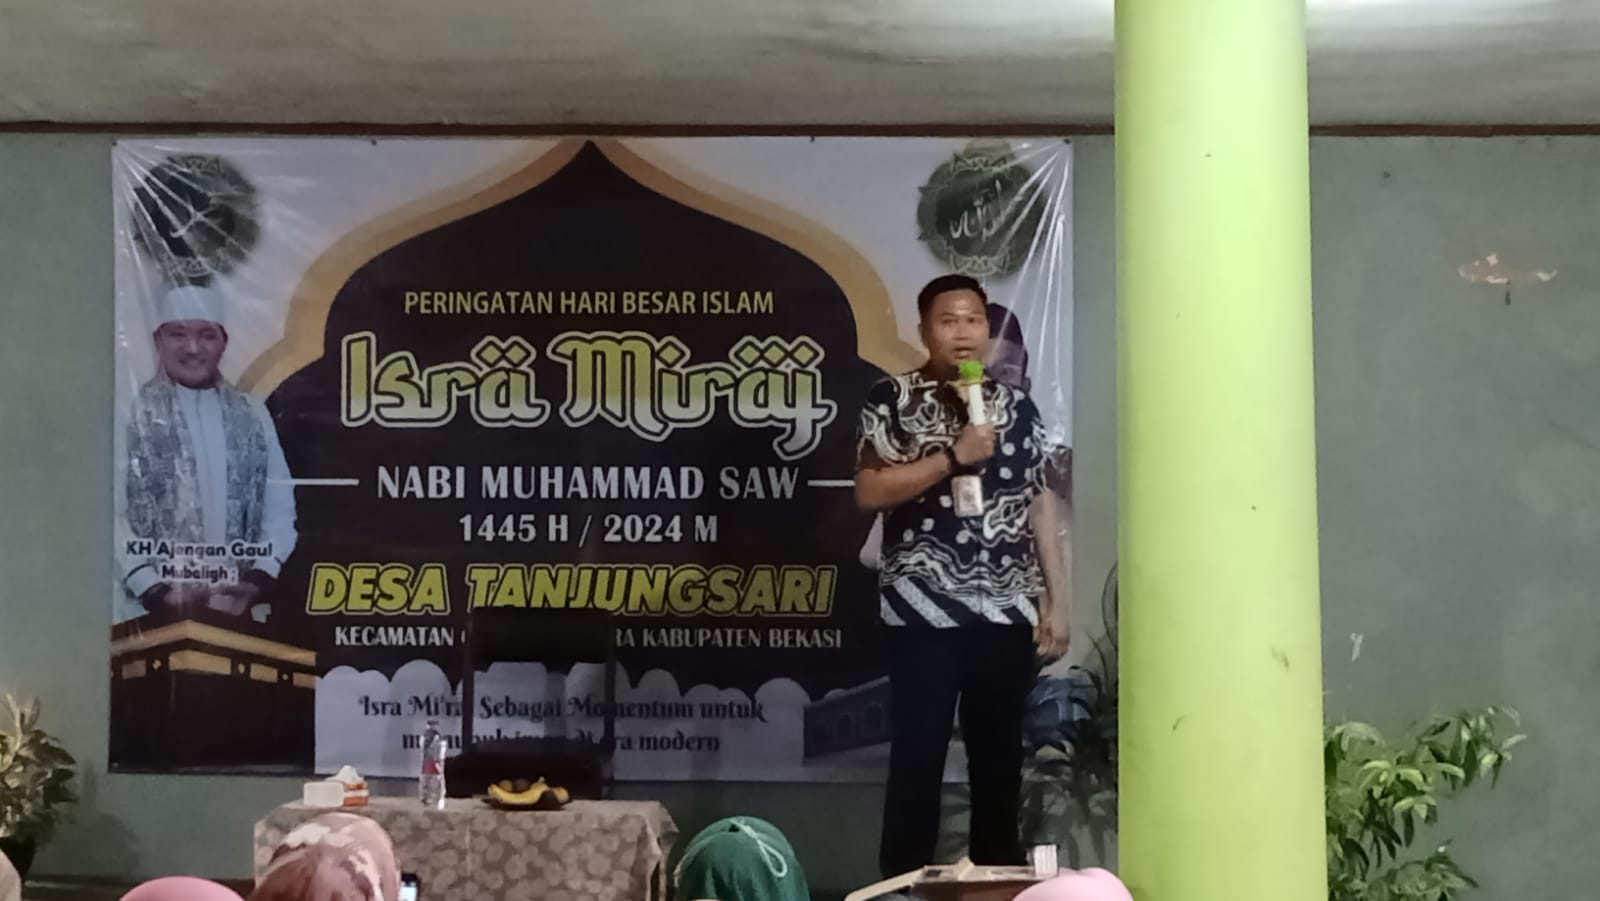 ASN Pemkab Bekasi Isi Kekosongan Jabatan Kepala Desa Tanjung Sari